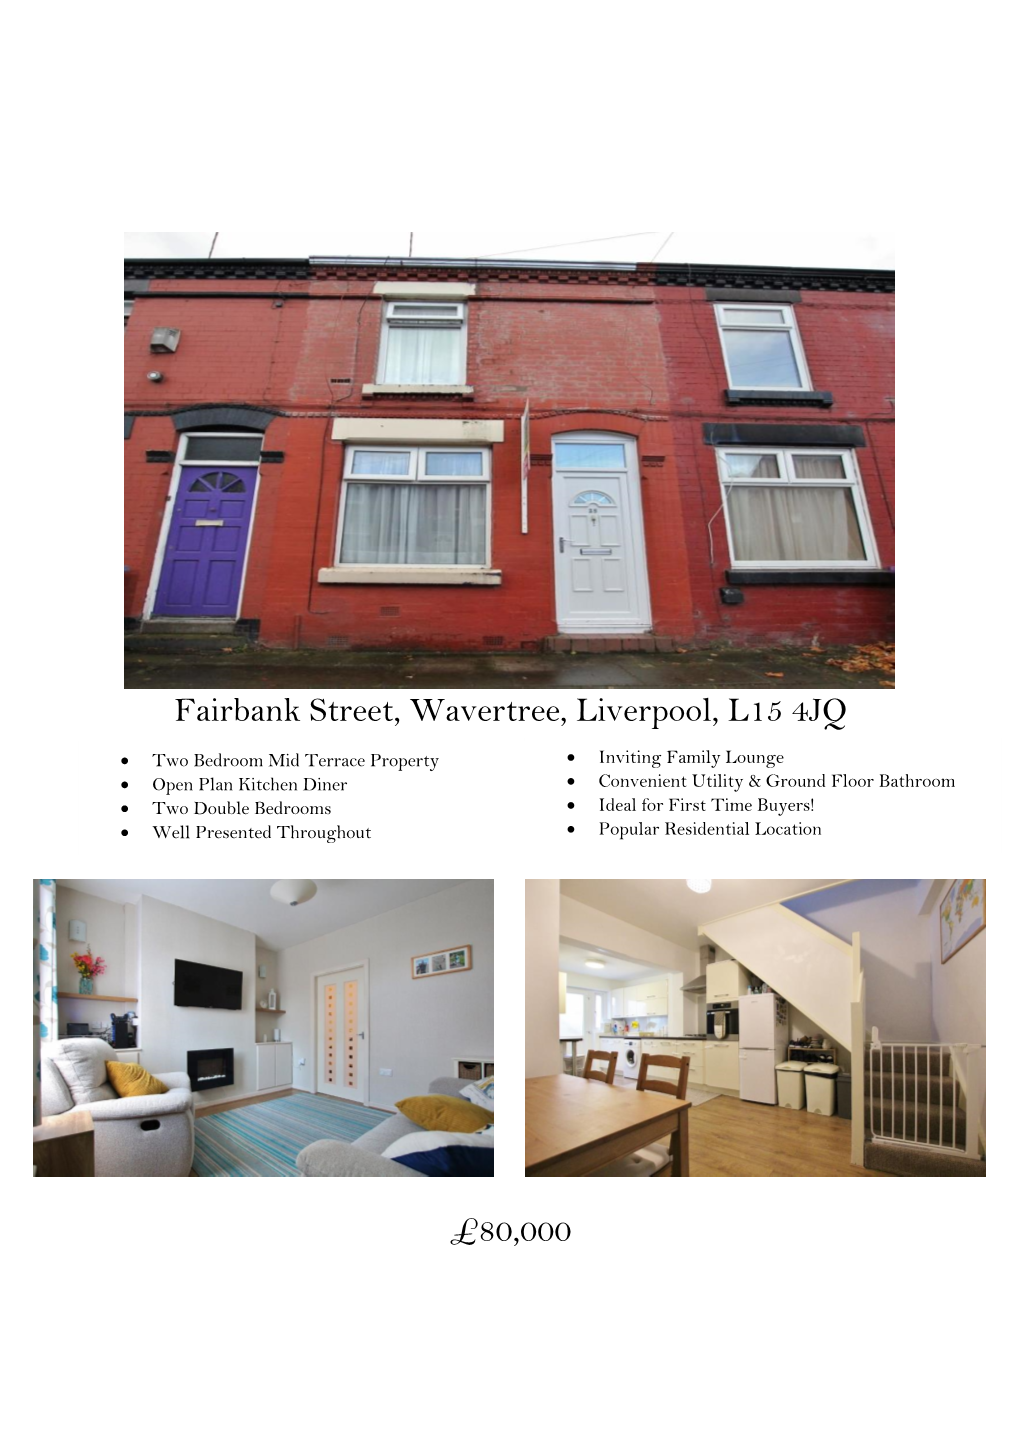 Fairbank Street, Wavertree, Liverpool, L15 4JQ £80,000